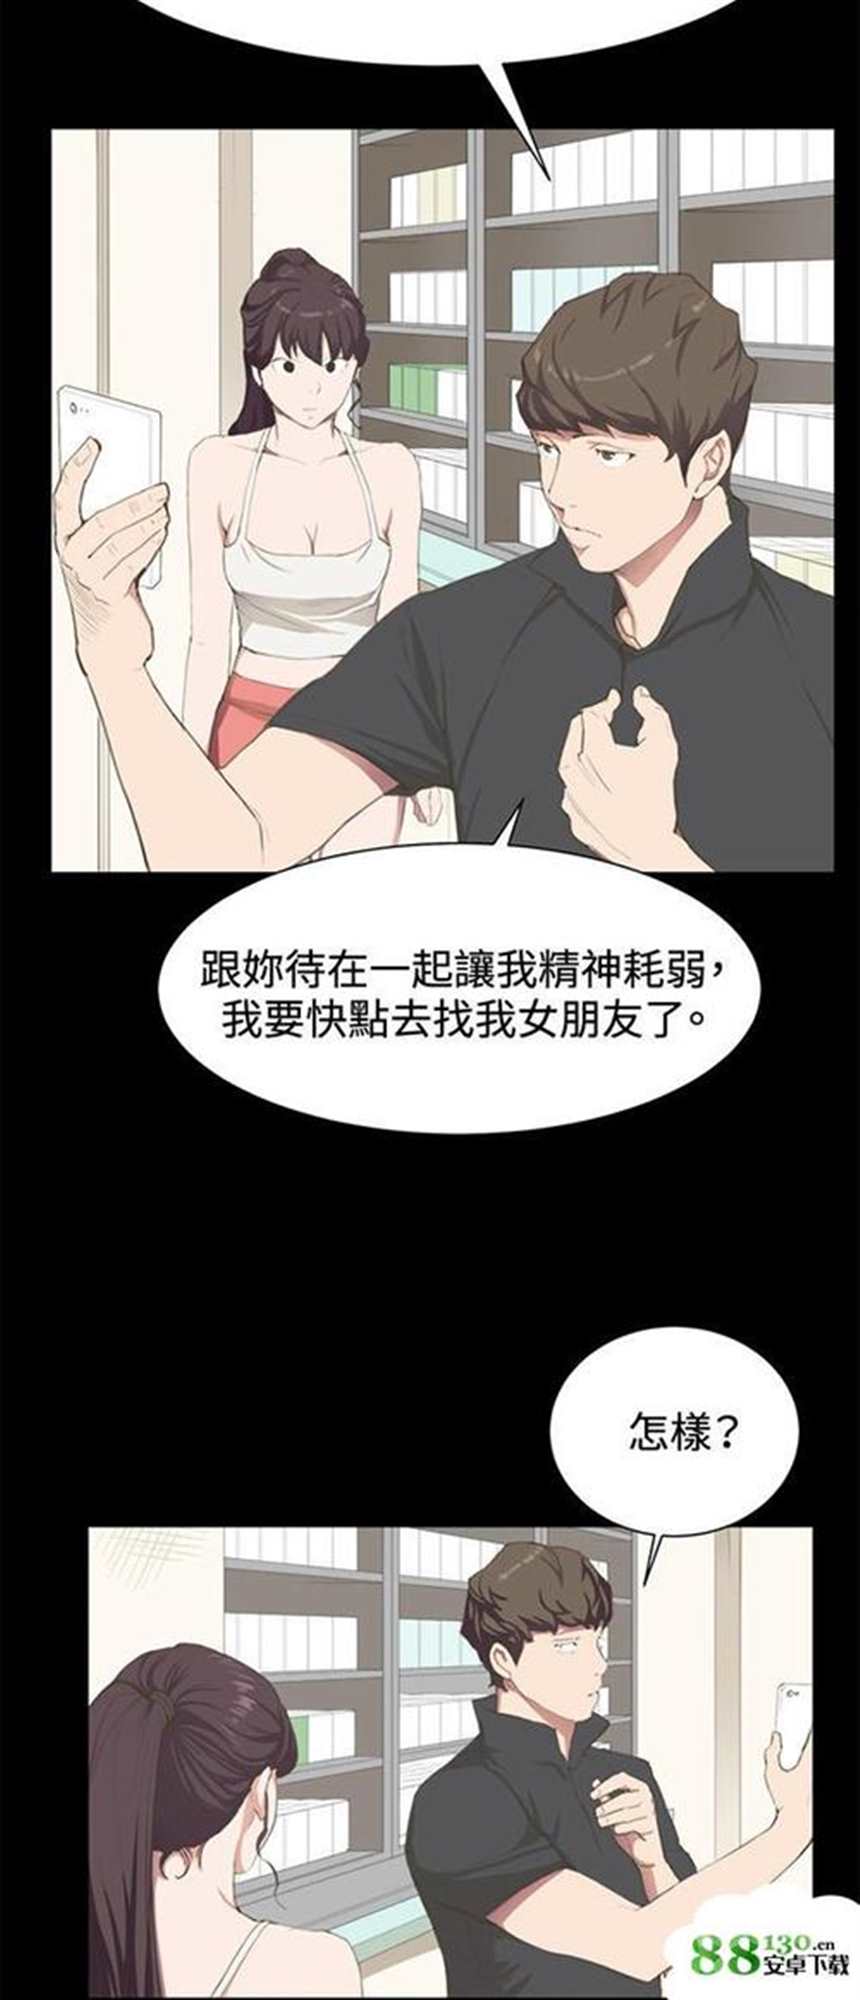 《边缘关系》/《继母/边缘关系/临界暧昧》韩国漫画(4)(点击浏览下一张趣图)